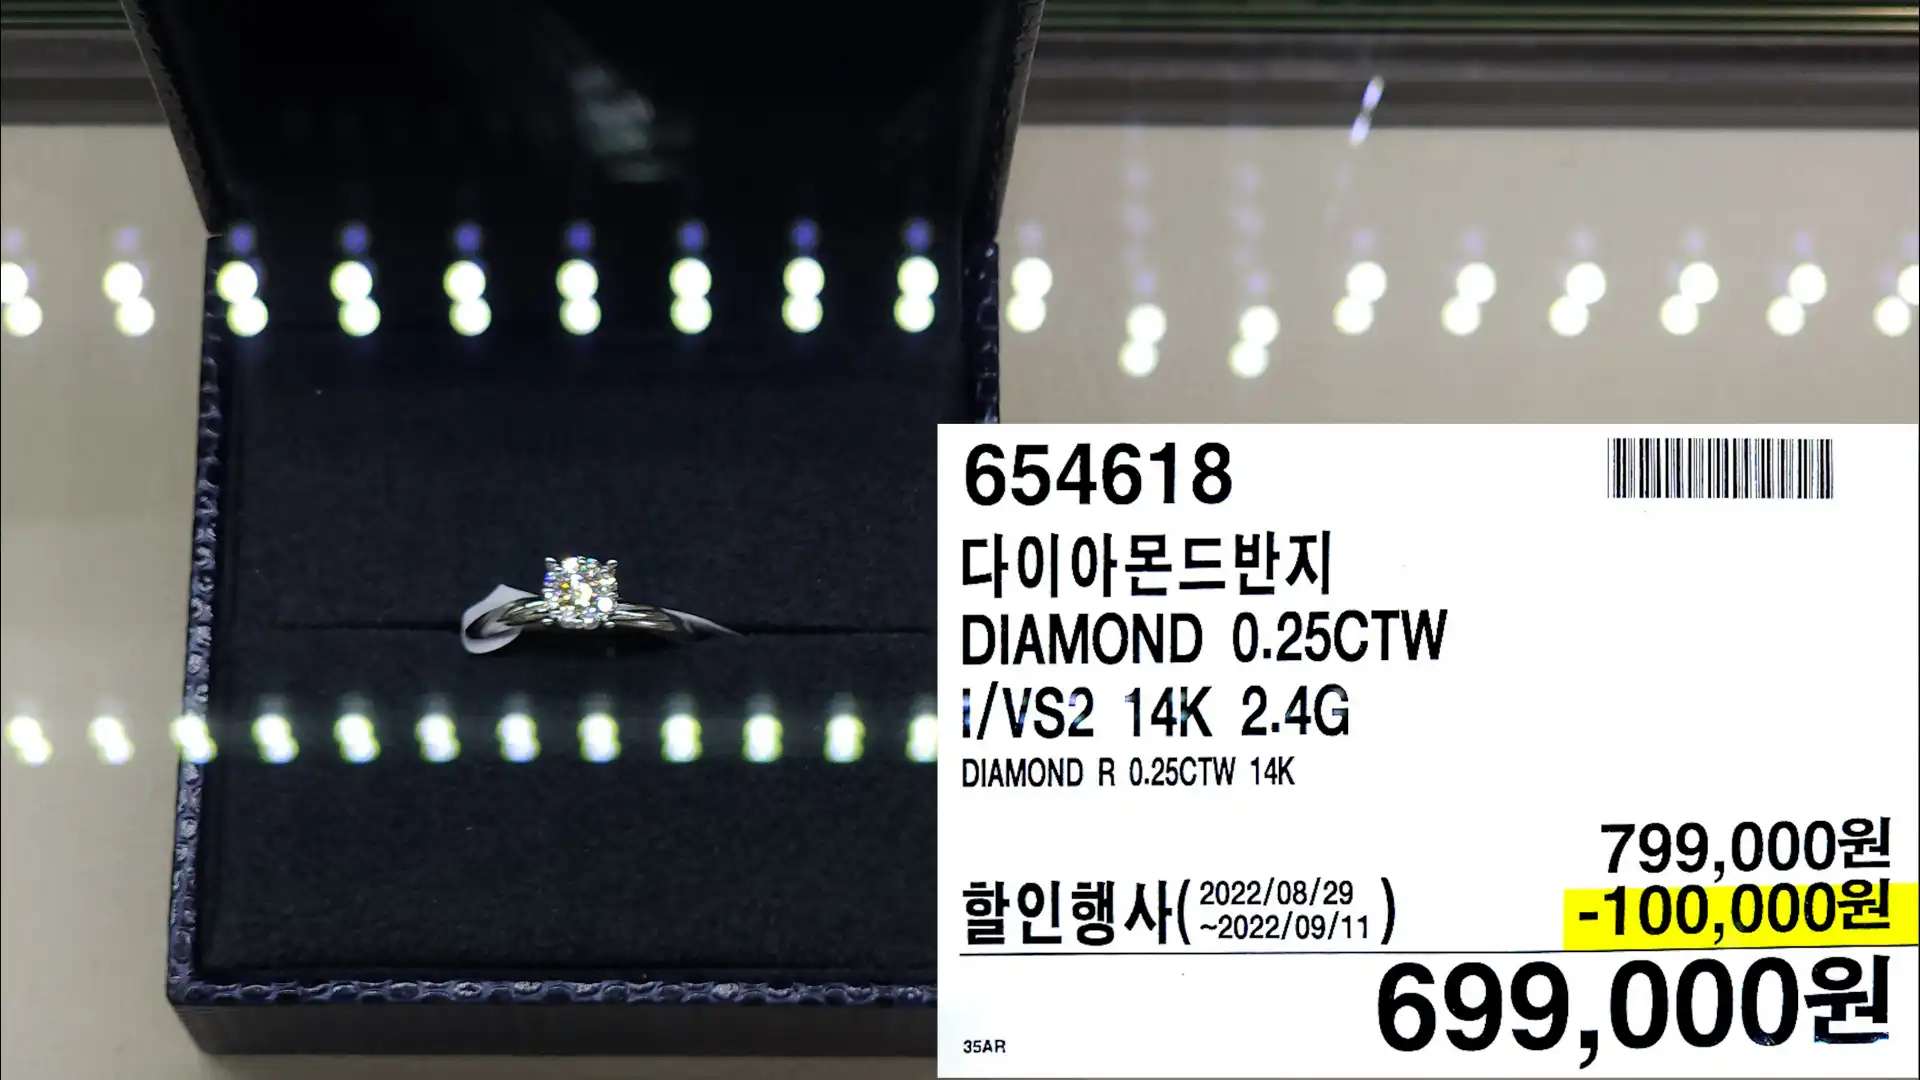 다이아몬드반지
DIAMOND 0.25CTW
¡/VS2 14K 2.4G
DIAMOND R 0.25CTW 14K
699,000원